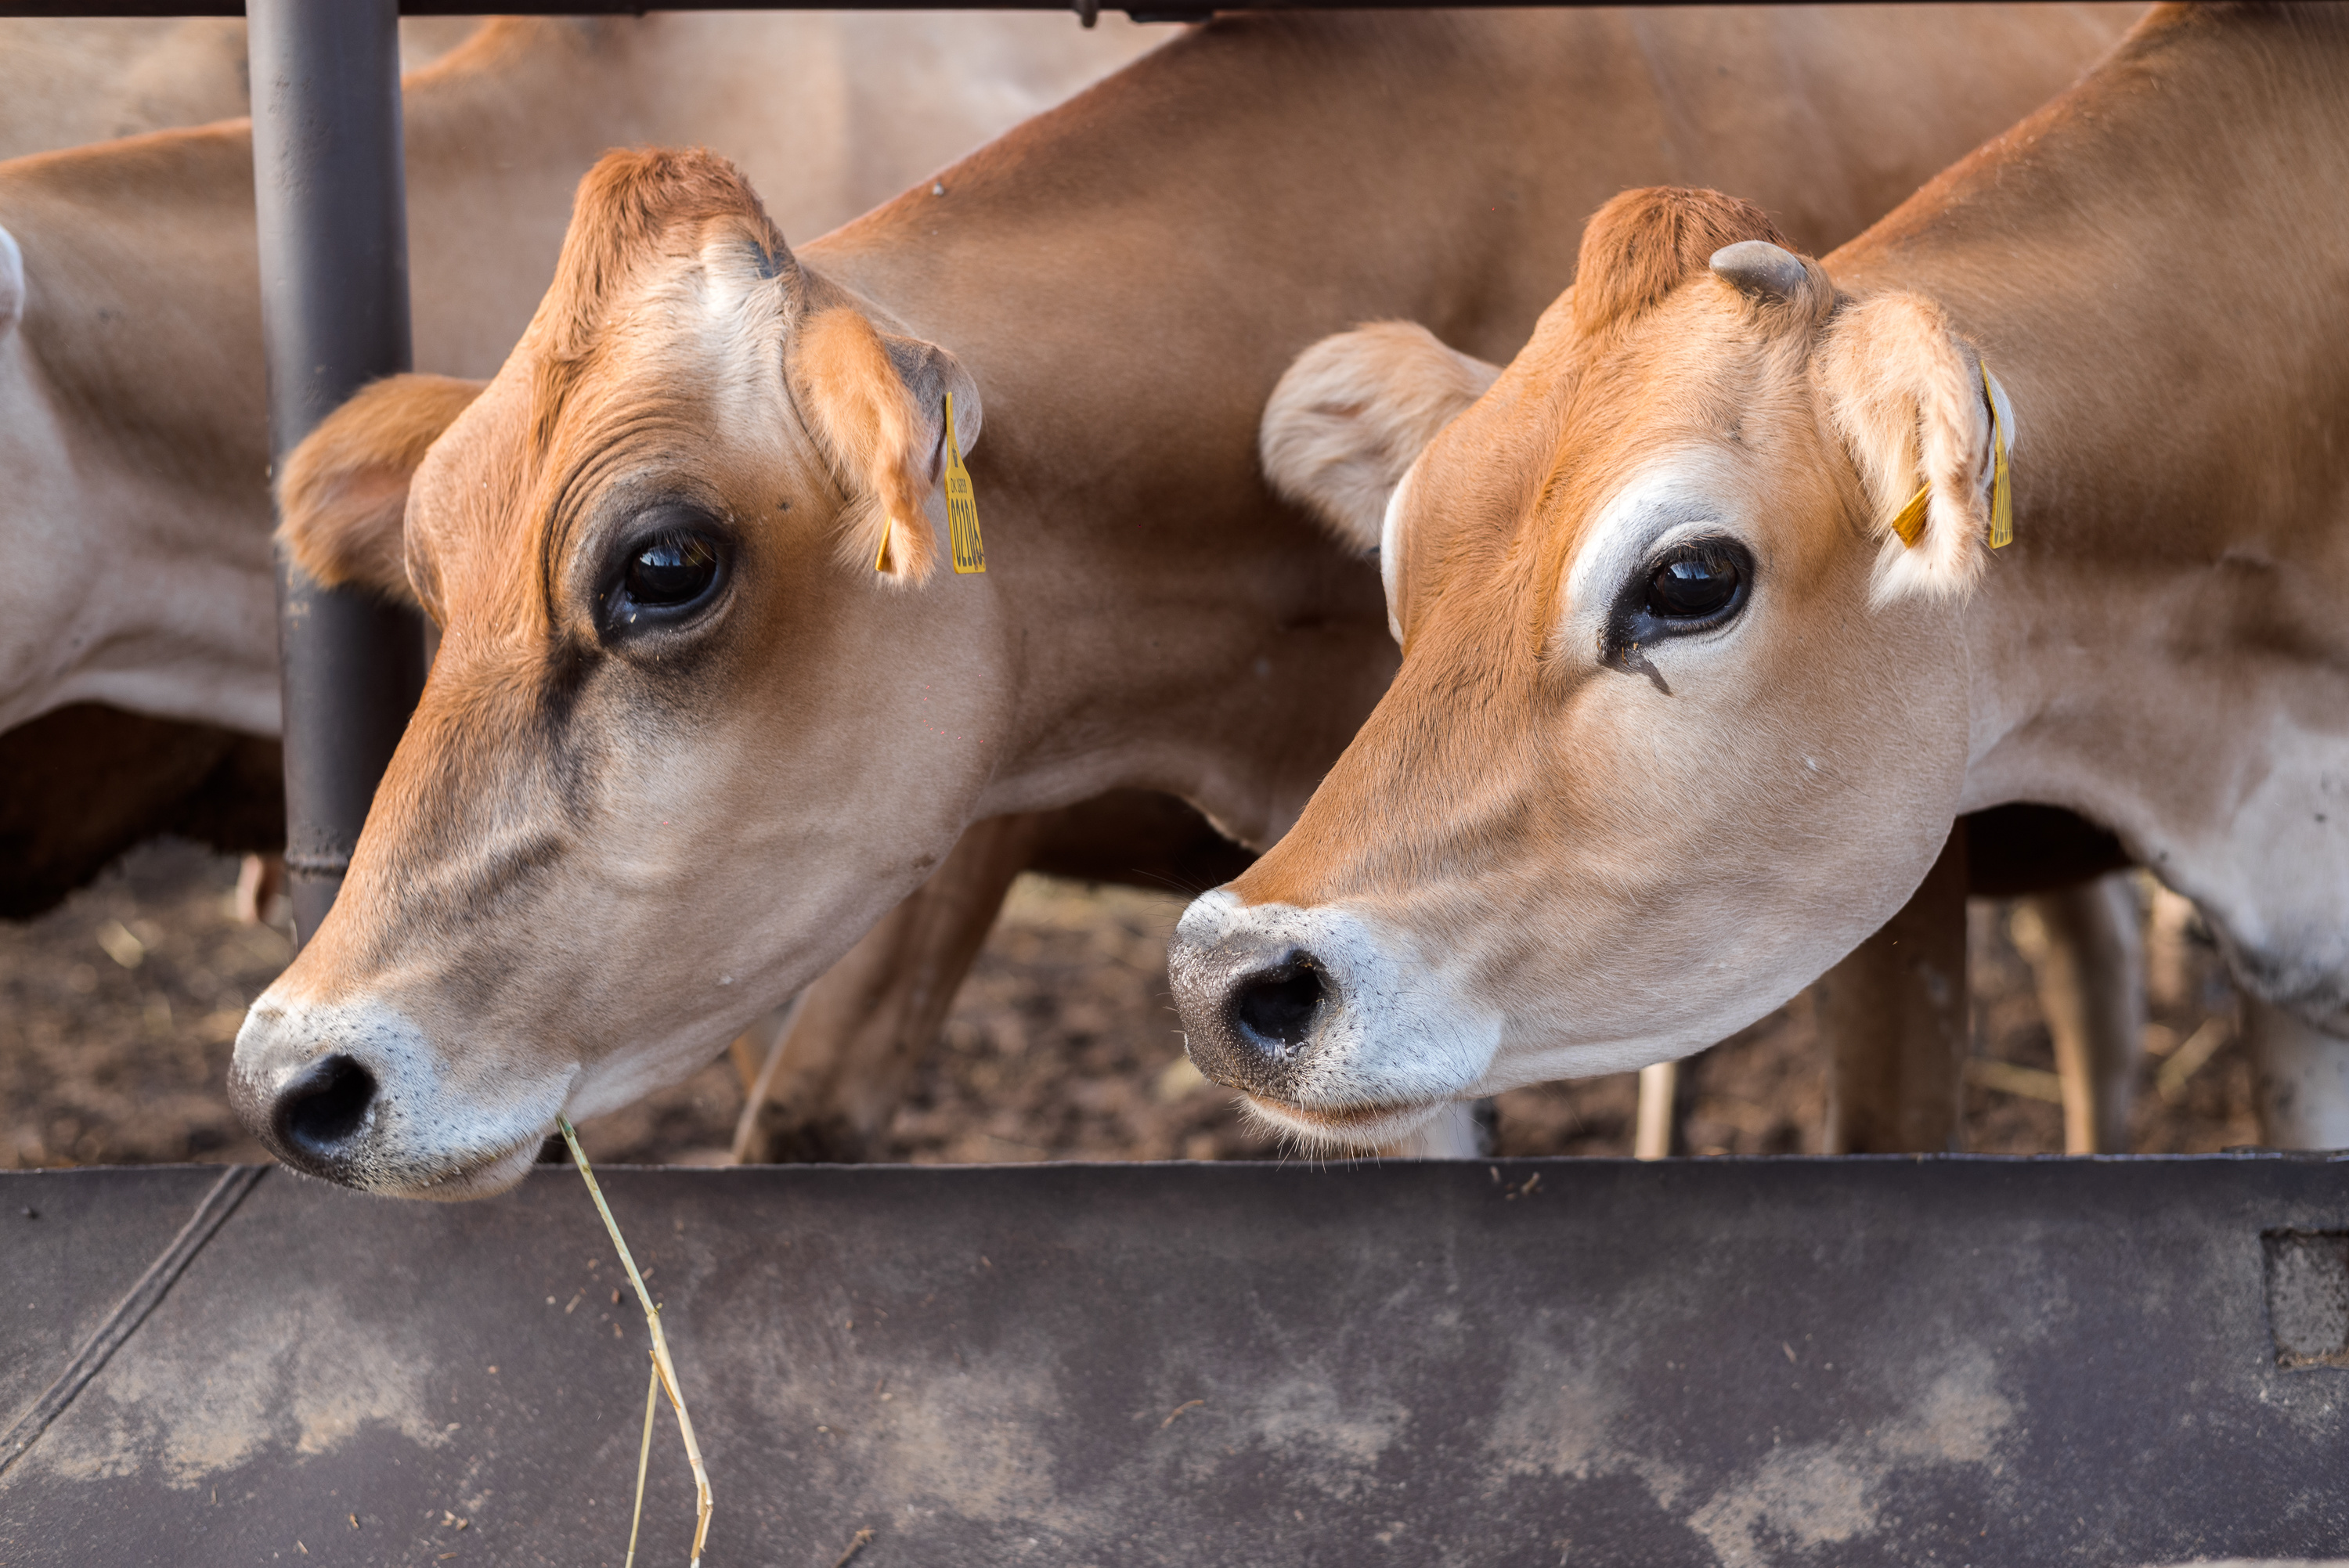 Уникальные для нашего региона джерсейские коровы очень красивые, но требуют особых кормов и условий содержания